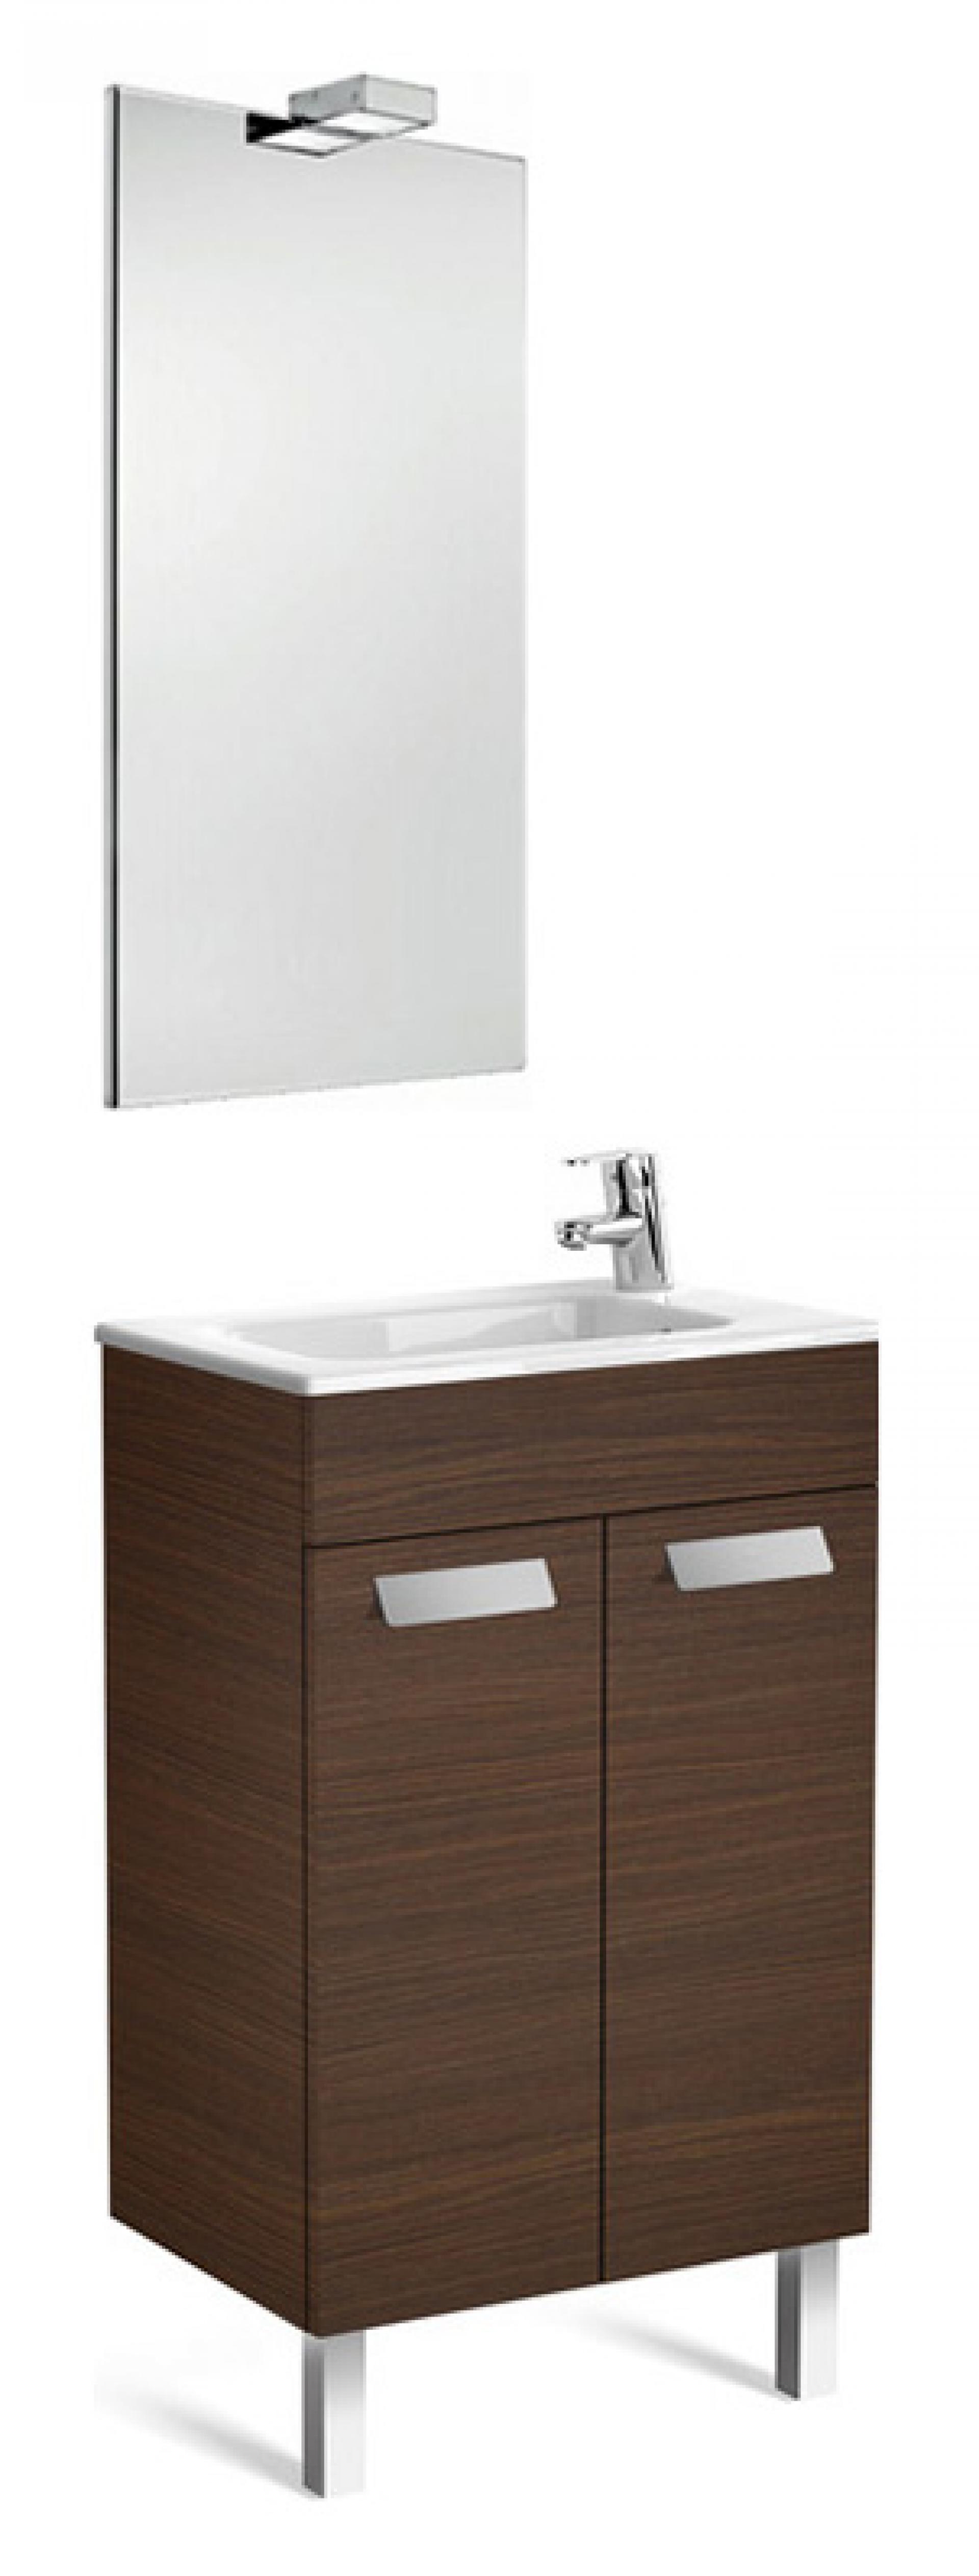 Фото: Мебель для ванной Roca Debba 50 венге Roca в каталоге